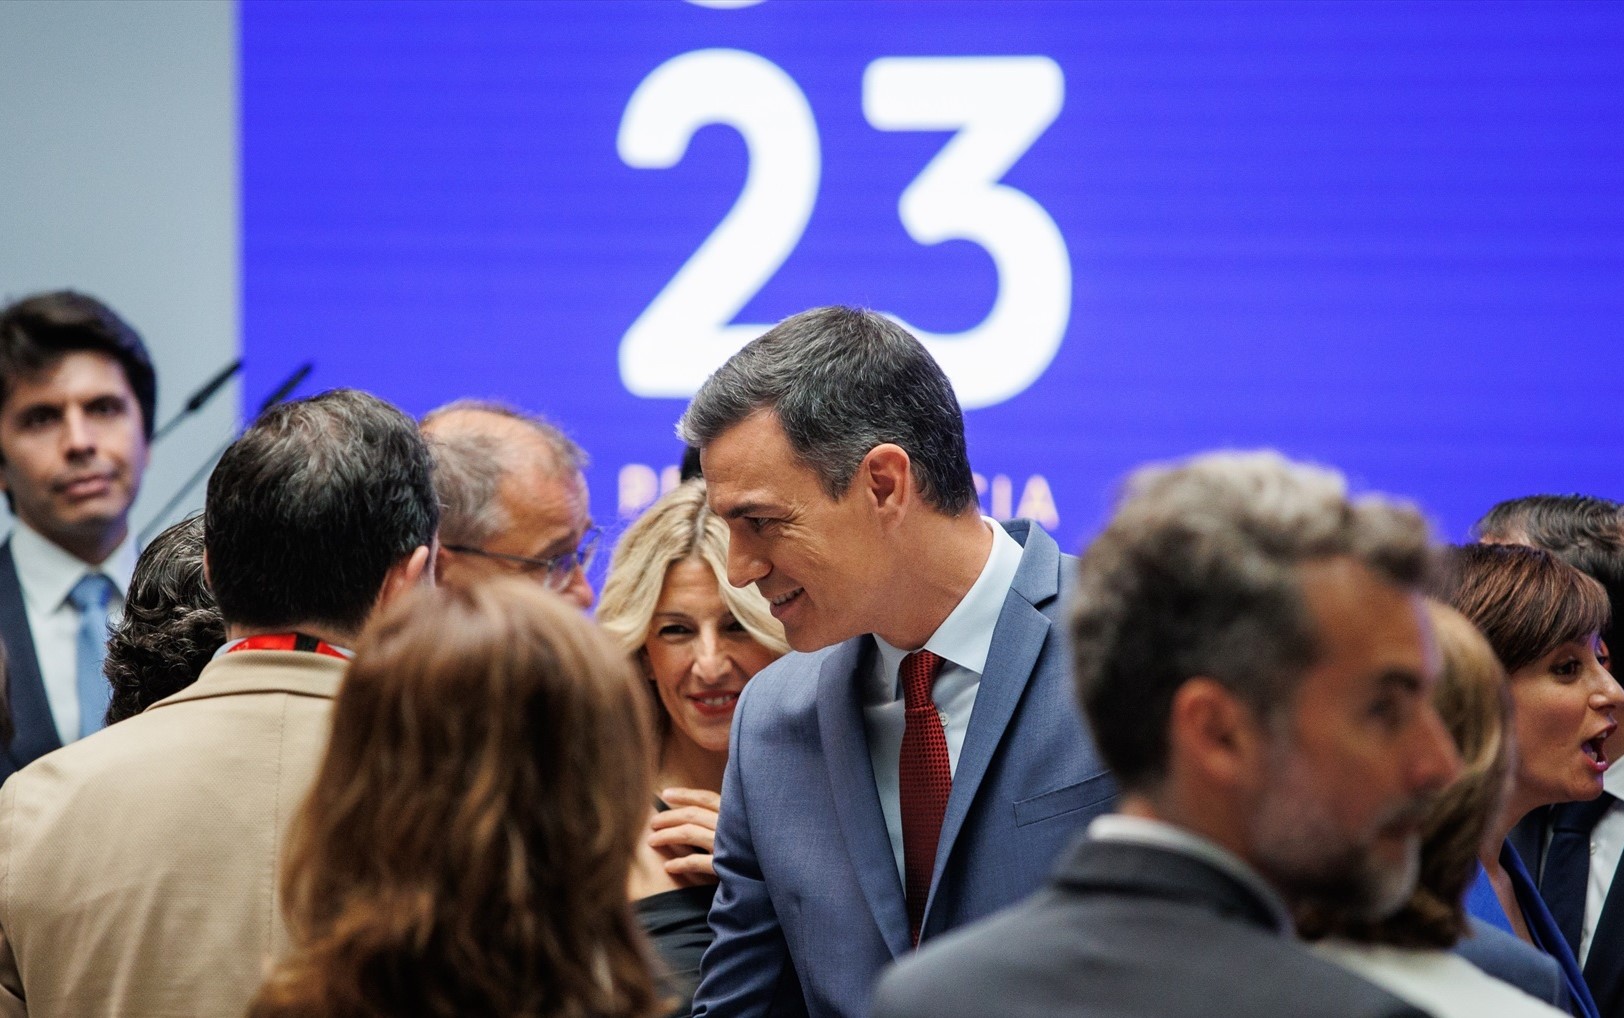 El presidente del Gobierno, Pedro Sánchez, saluda tras la presentación de las prioridades de la Presidencia española del Consejo de la UE, en el Palacio de la Moncloa, a 15 de junio de 2023, en Madrid (España). -ALEJANDRO MARTÍNEZ VÉLEZ / Europa Press